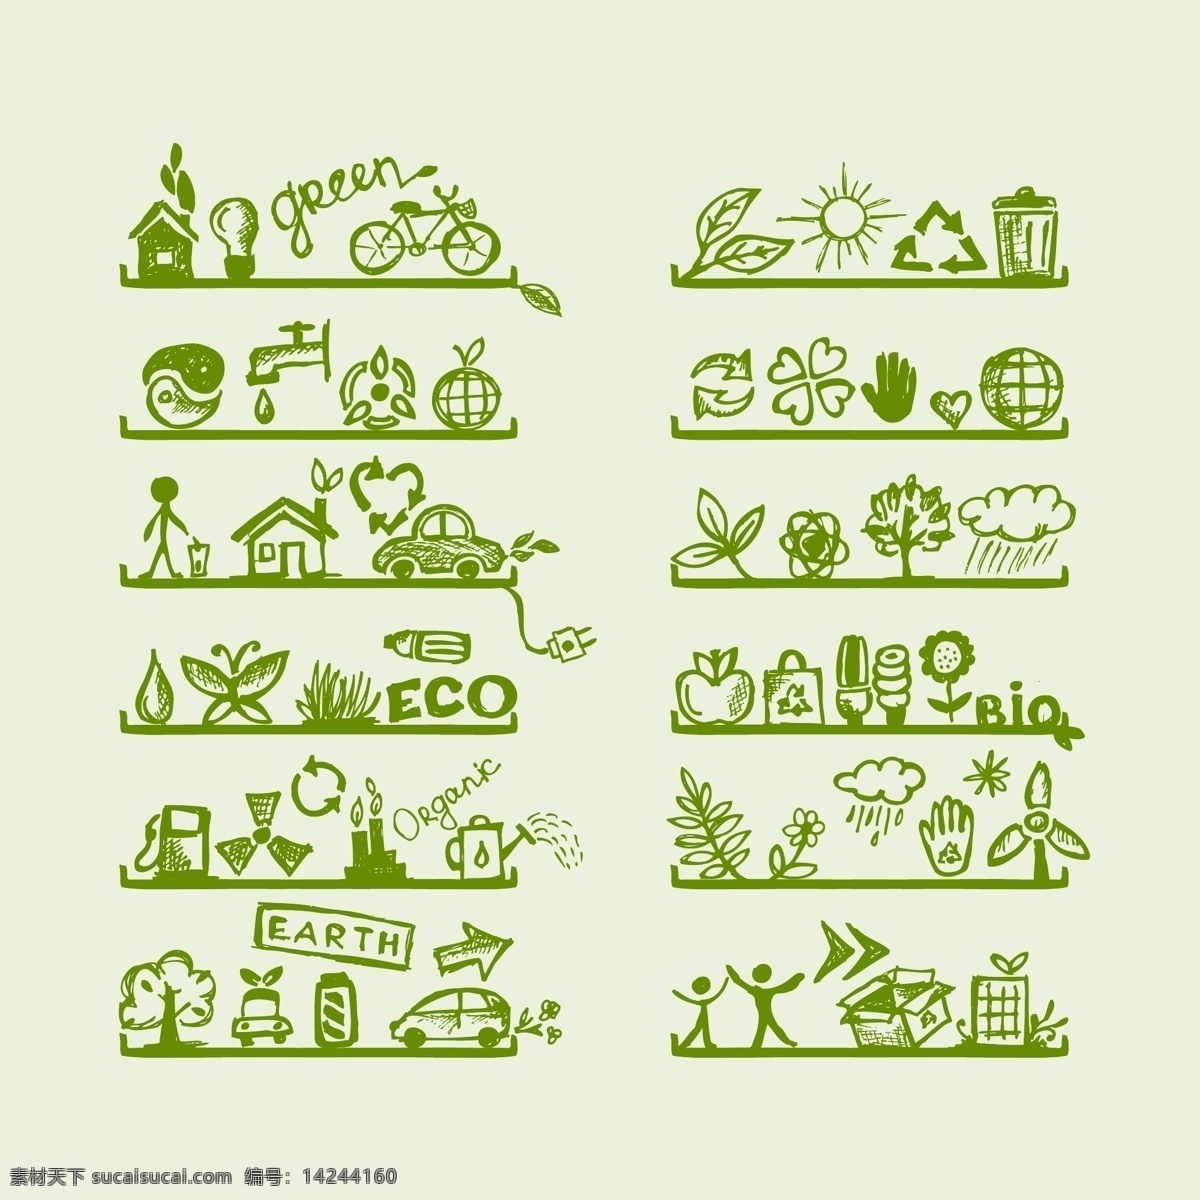 绿色环保 资源 节能 矢量 绿色 环保 树木 矢量素材 设计素材